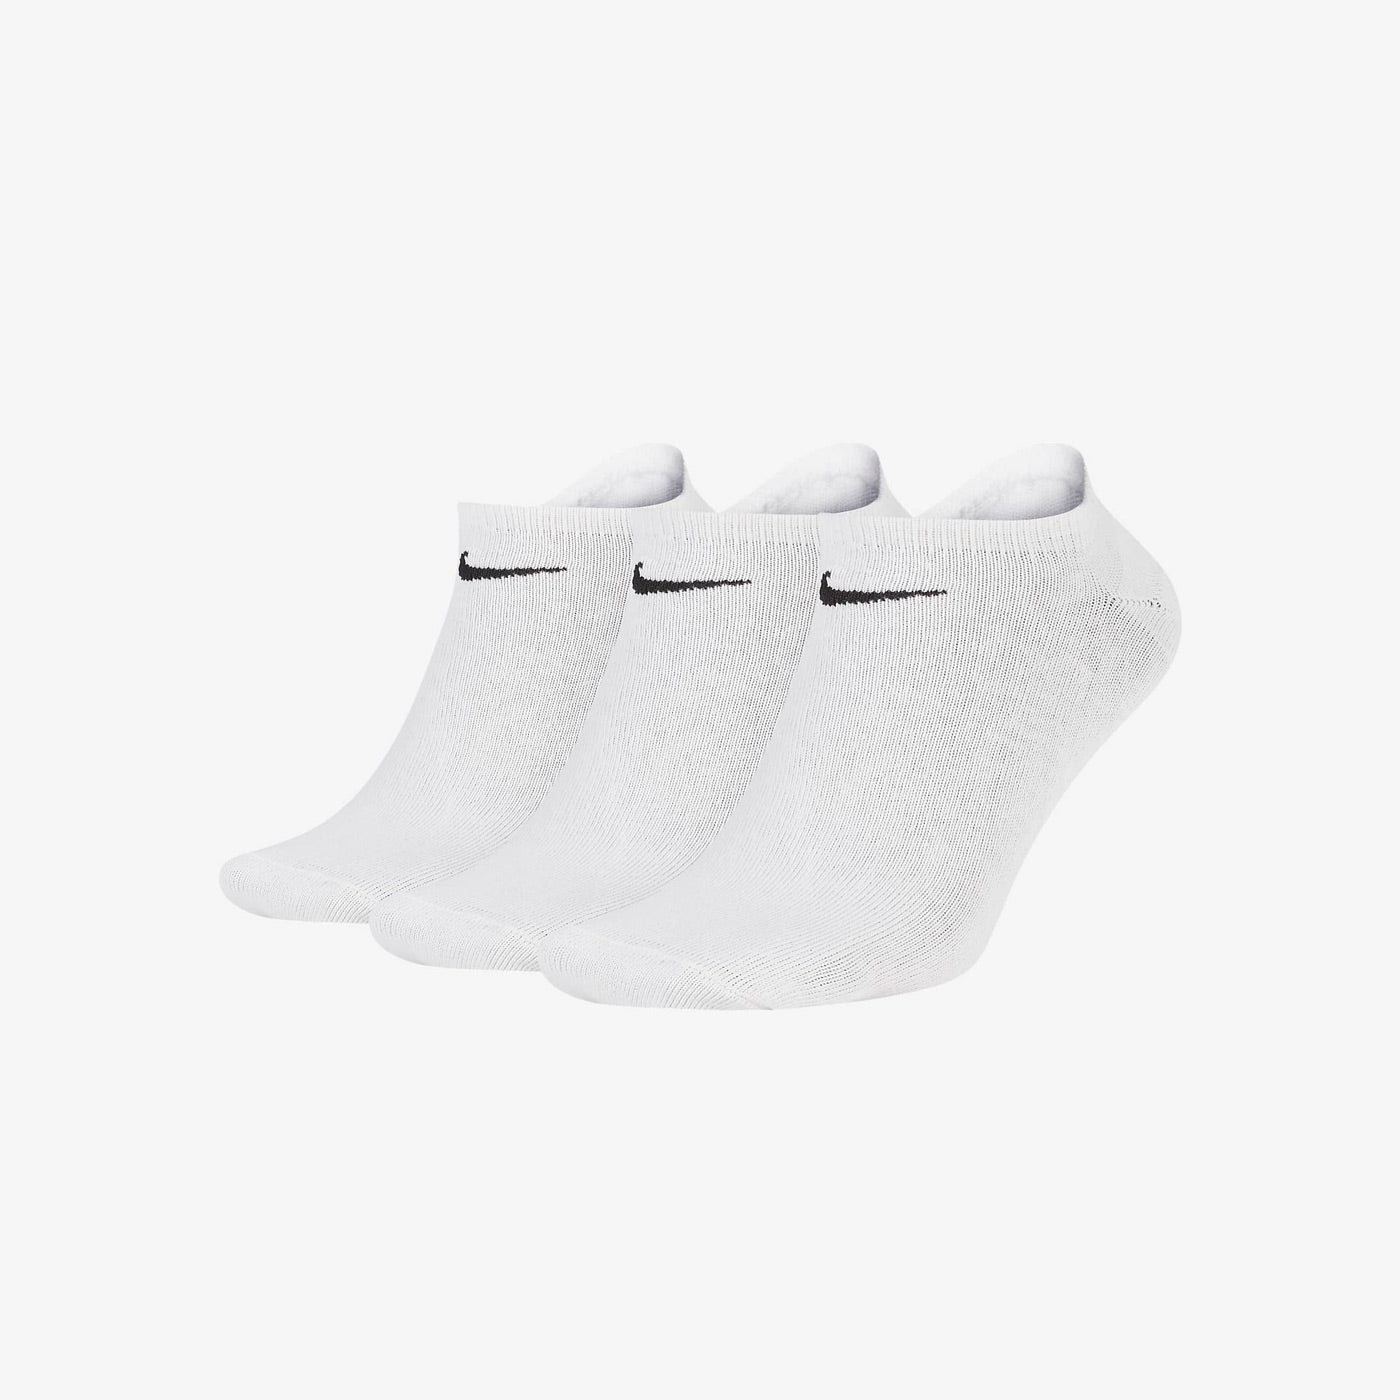 Socks Training White Pack 3 – Brands Democracy